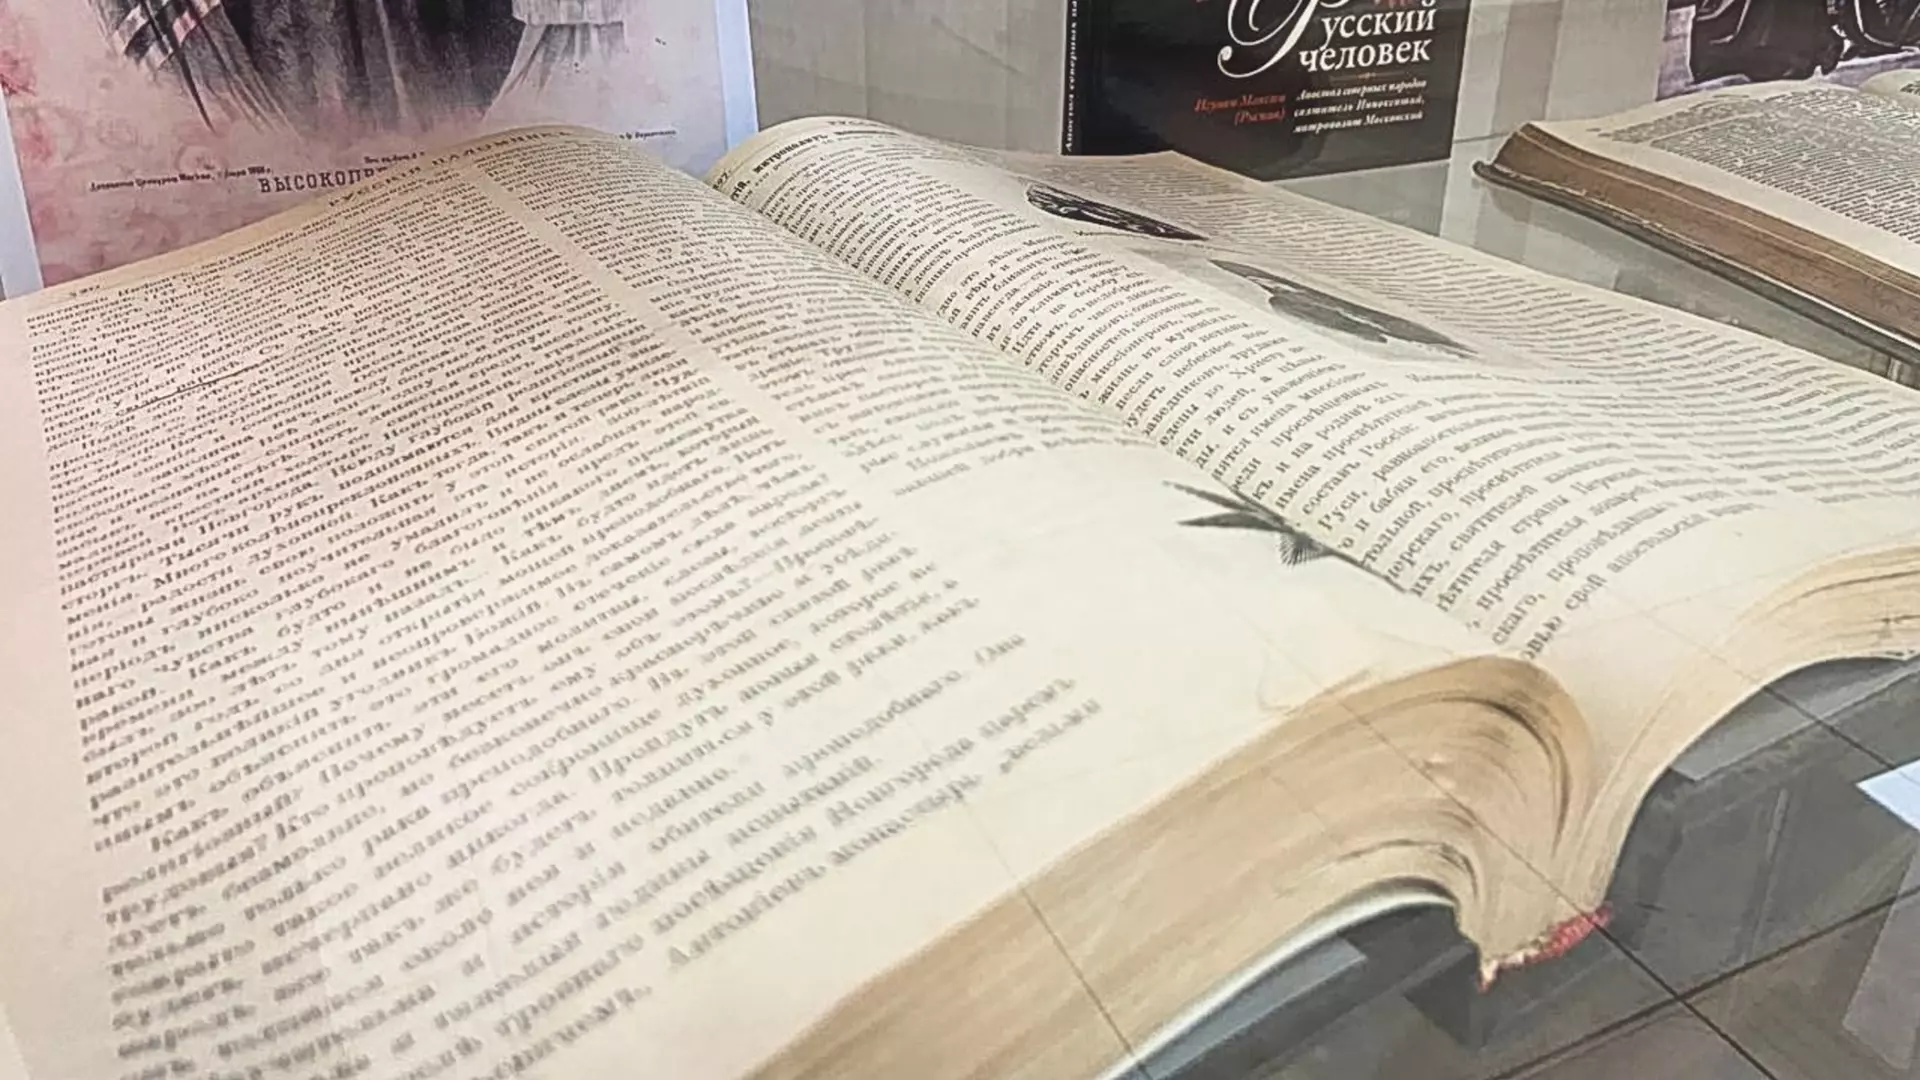 Более трех десятков старинных книг оцифровали в Национальной библиотеке Удмуртии